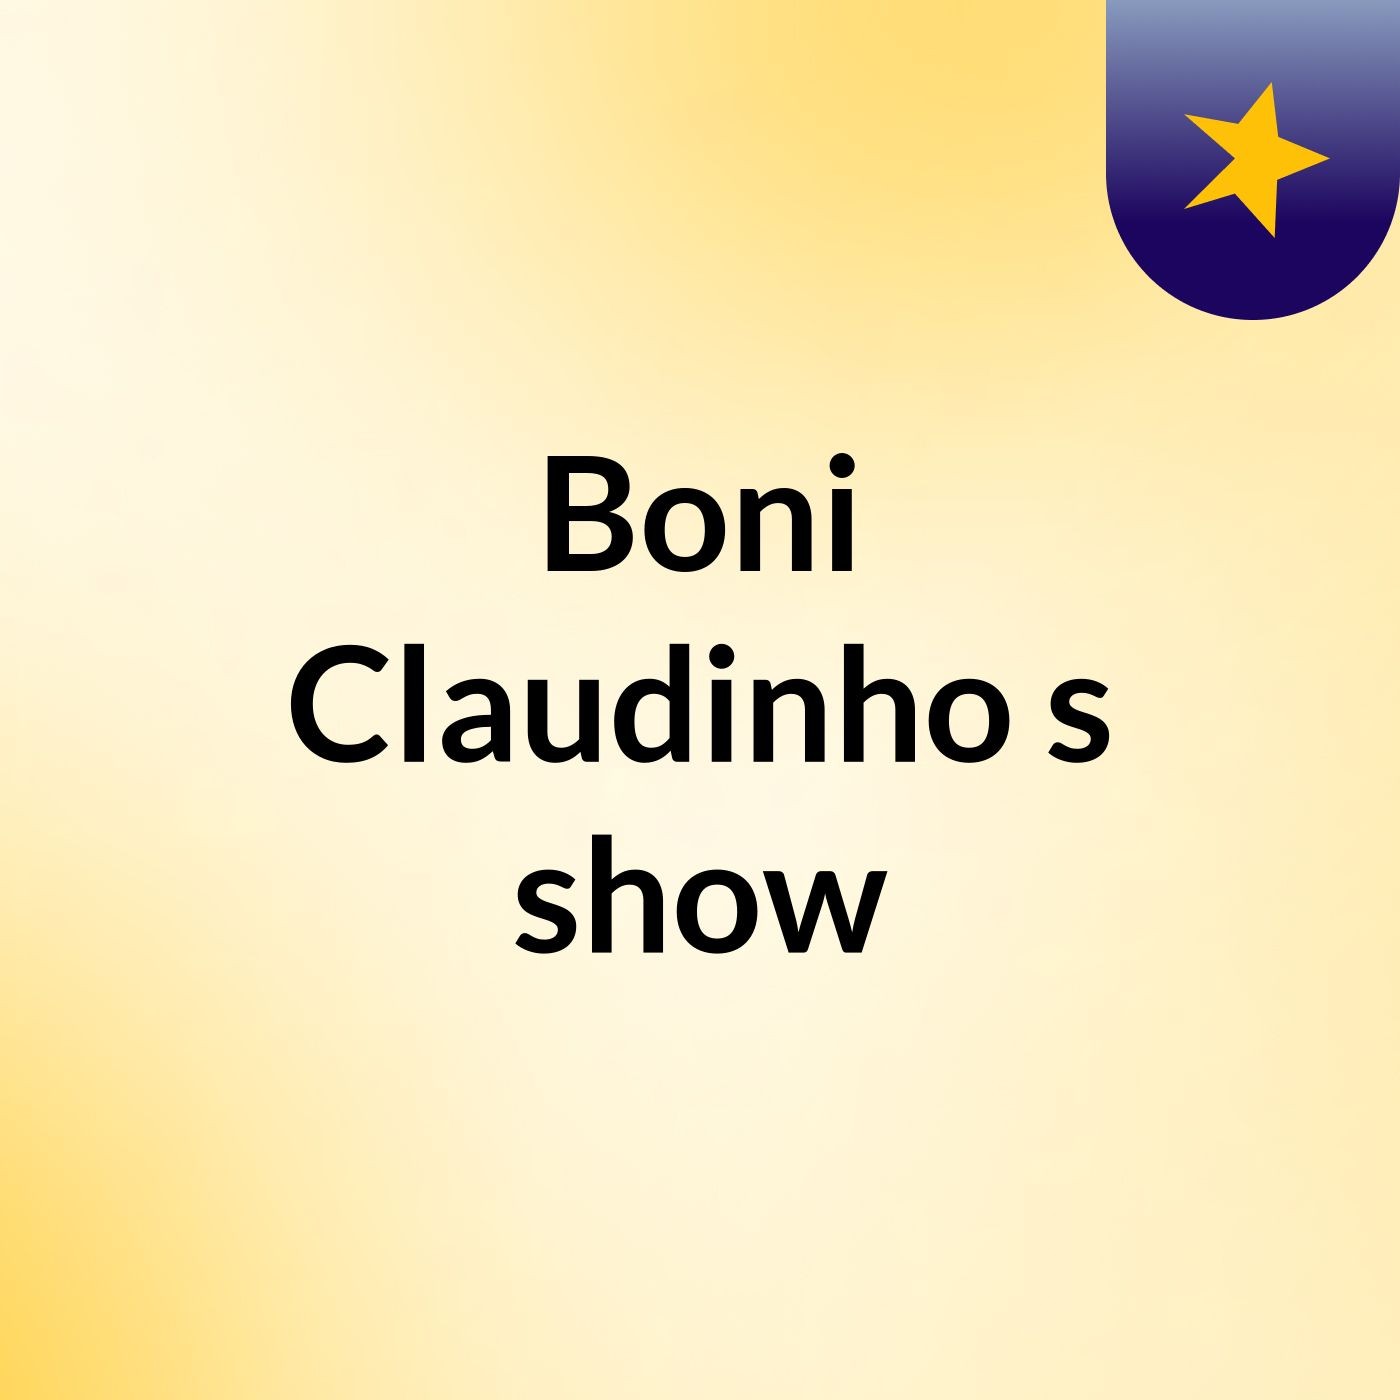 Boni Claudinho's show